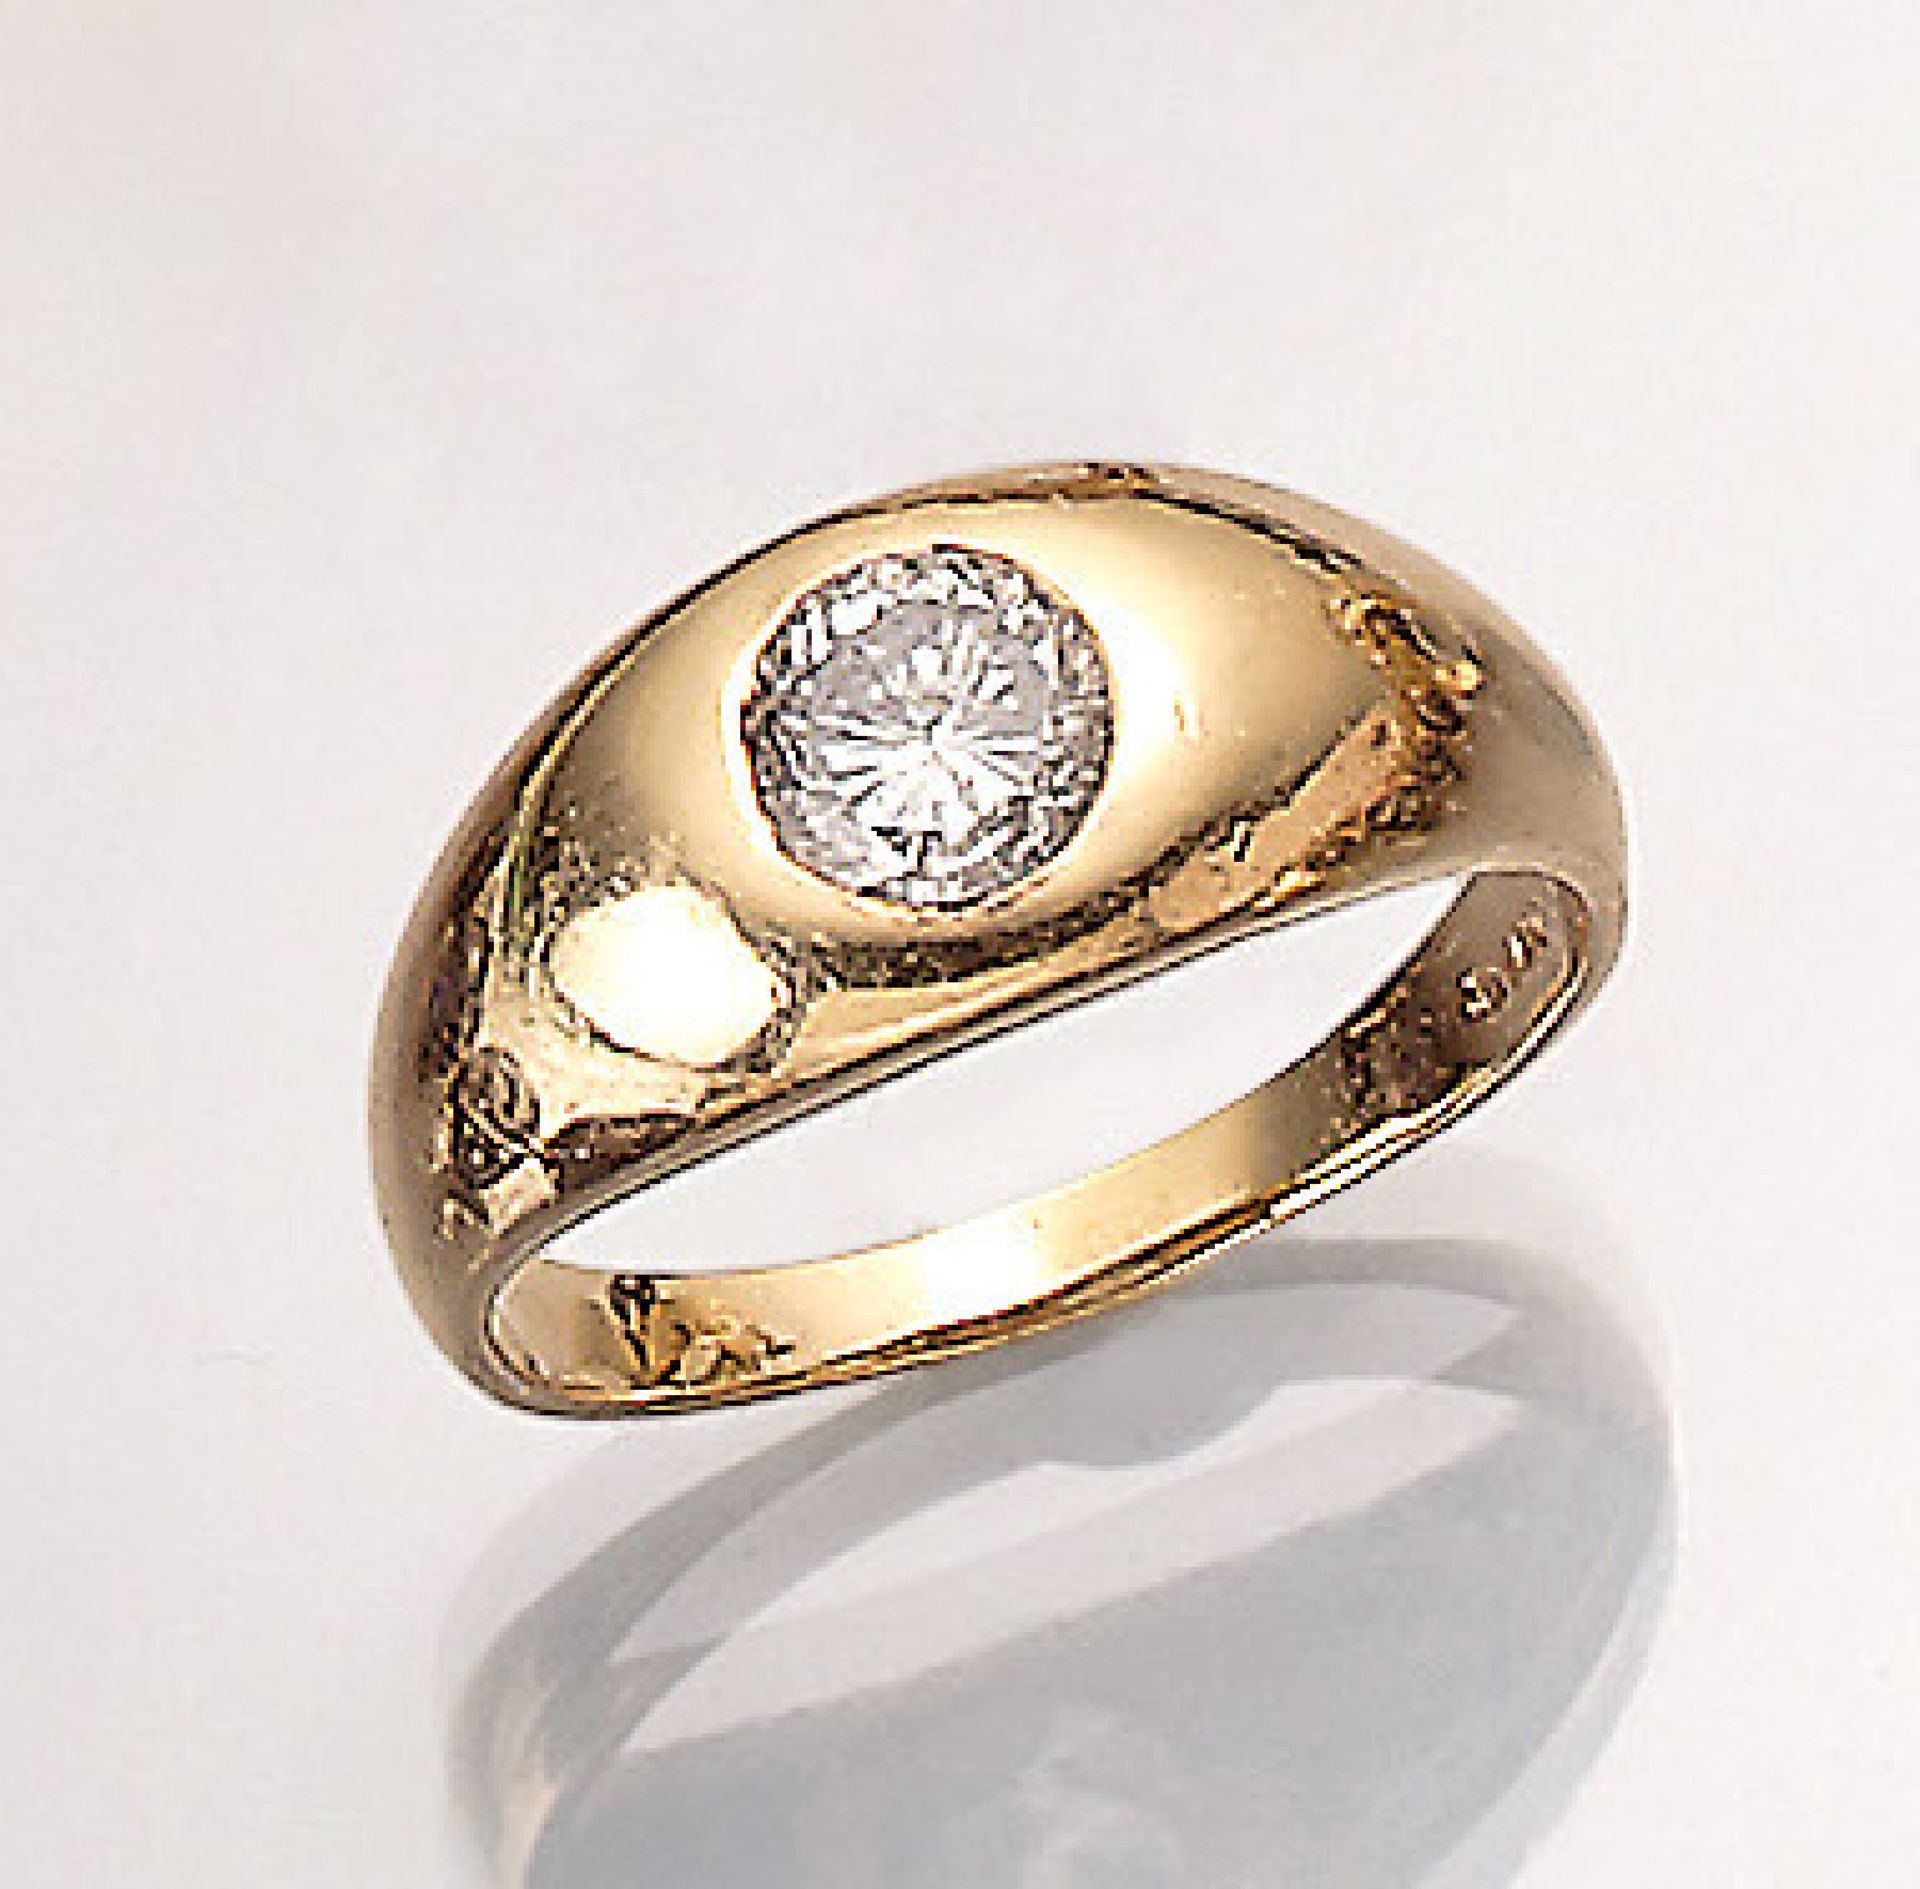 14 kt Gold Ring mit Brillant, GG 585/000, Brillant ca. 1.20 ct l.get.Weiß/p1, RW 62, total ca. 6.7